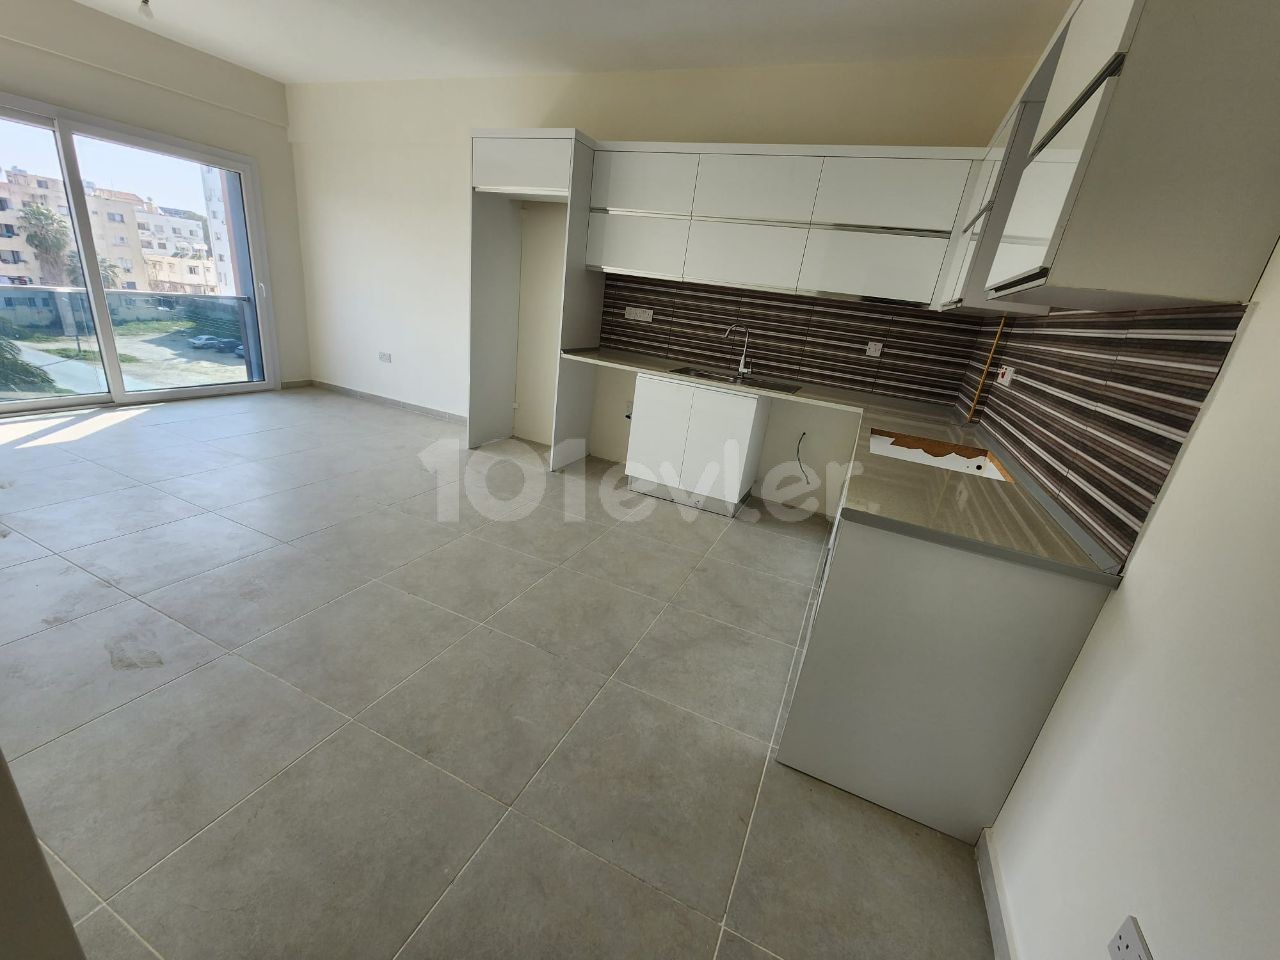 2+1 neue Wohnung zum Verkauf im Zentrum von Famagusta in zentraler Lage 